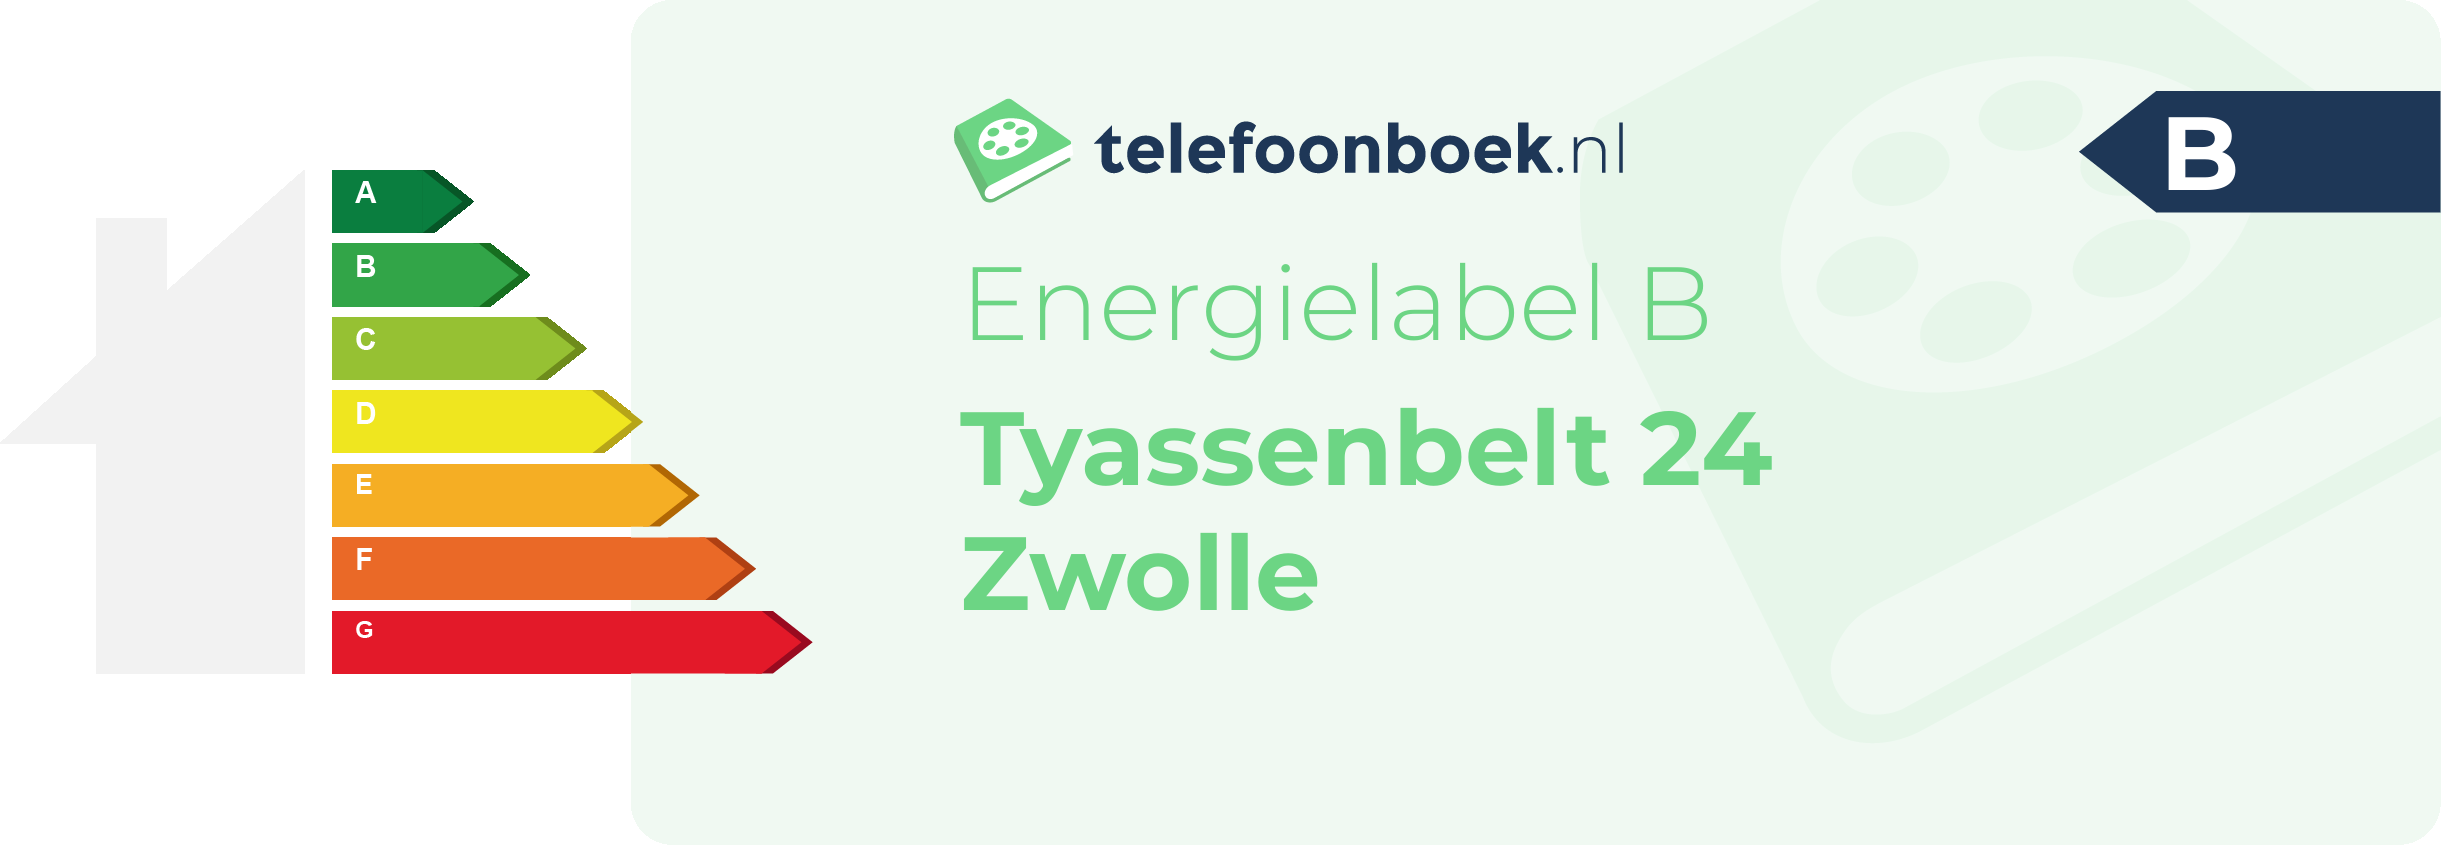 Energielabel Tyassenbelt 24 Zwolle